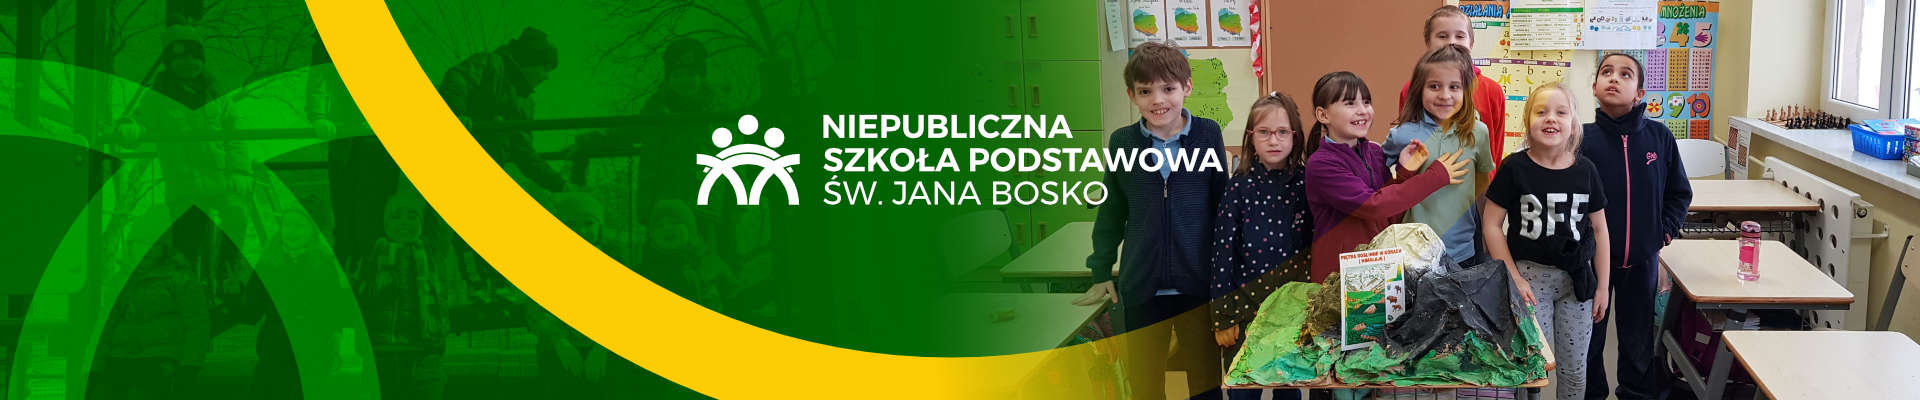 http://bosko.lublin.pl/niepubliczna-szkola-podstawowa-swietego-jana-bosko